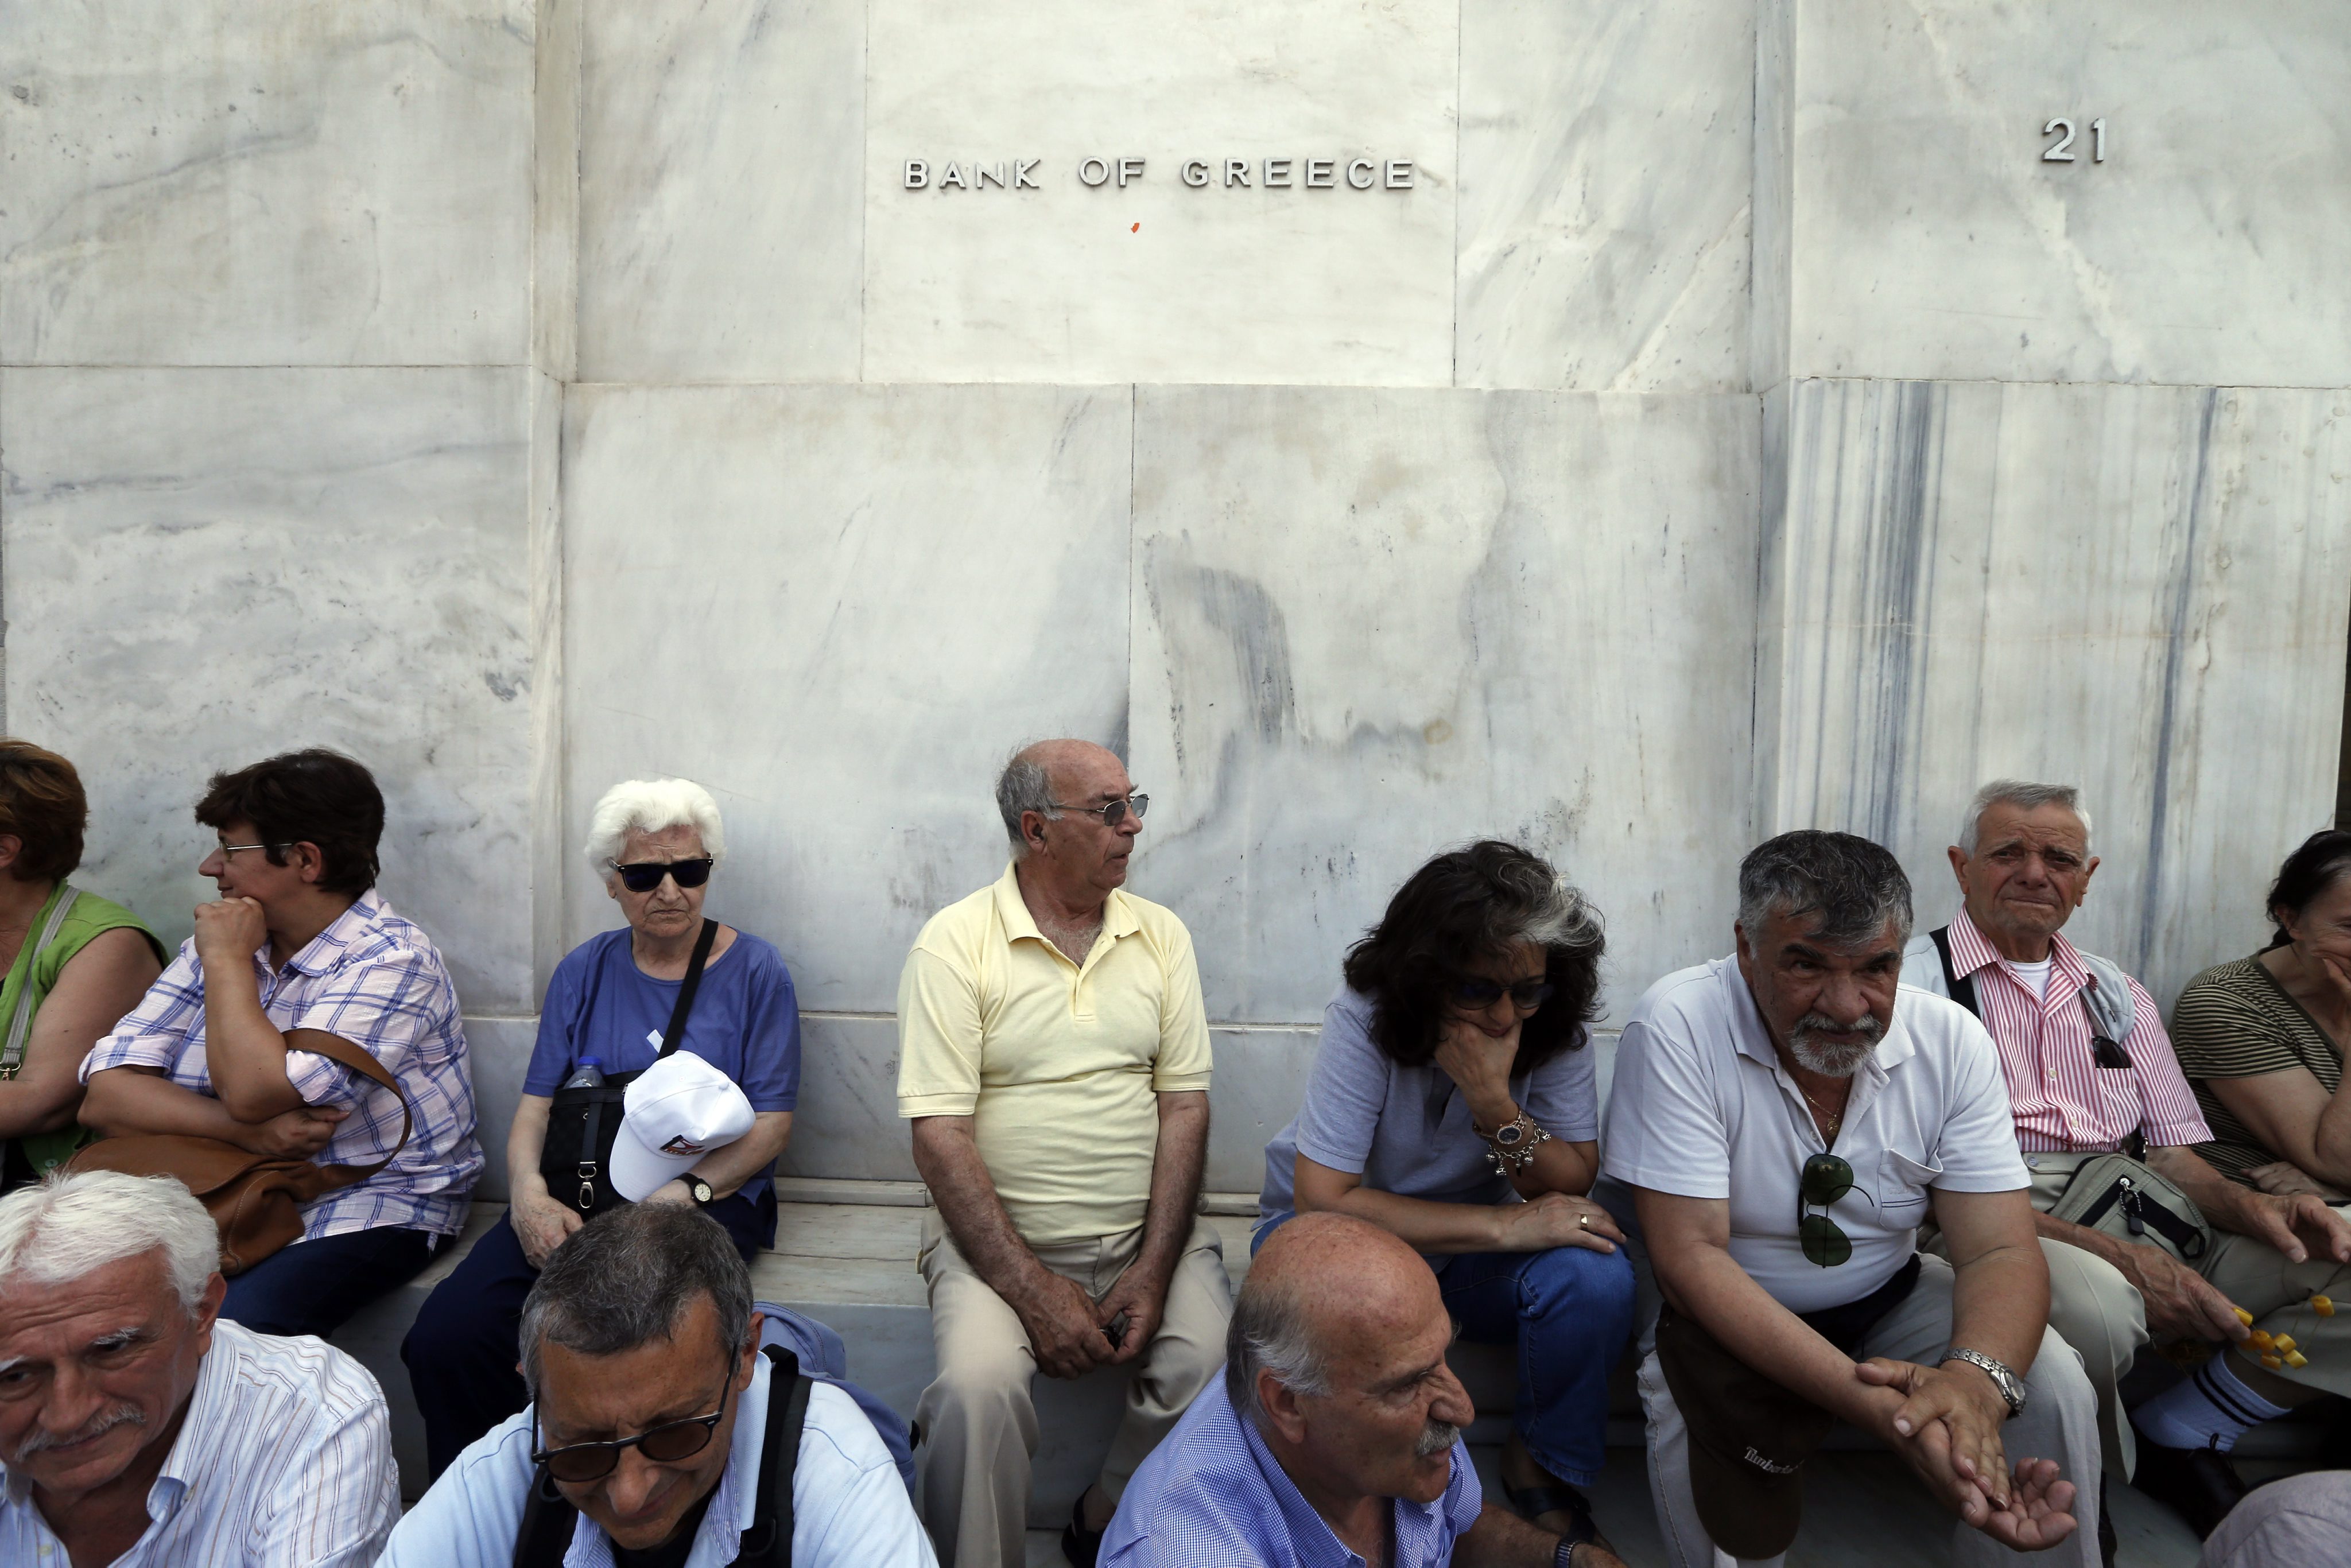 Λεπτό προς λεπτό οι δραματικές εξελίξεις στην Ελλάδα (συνεχής ενημέρωση)